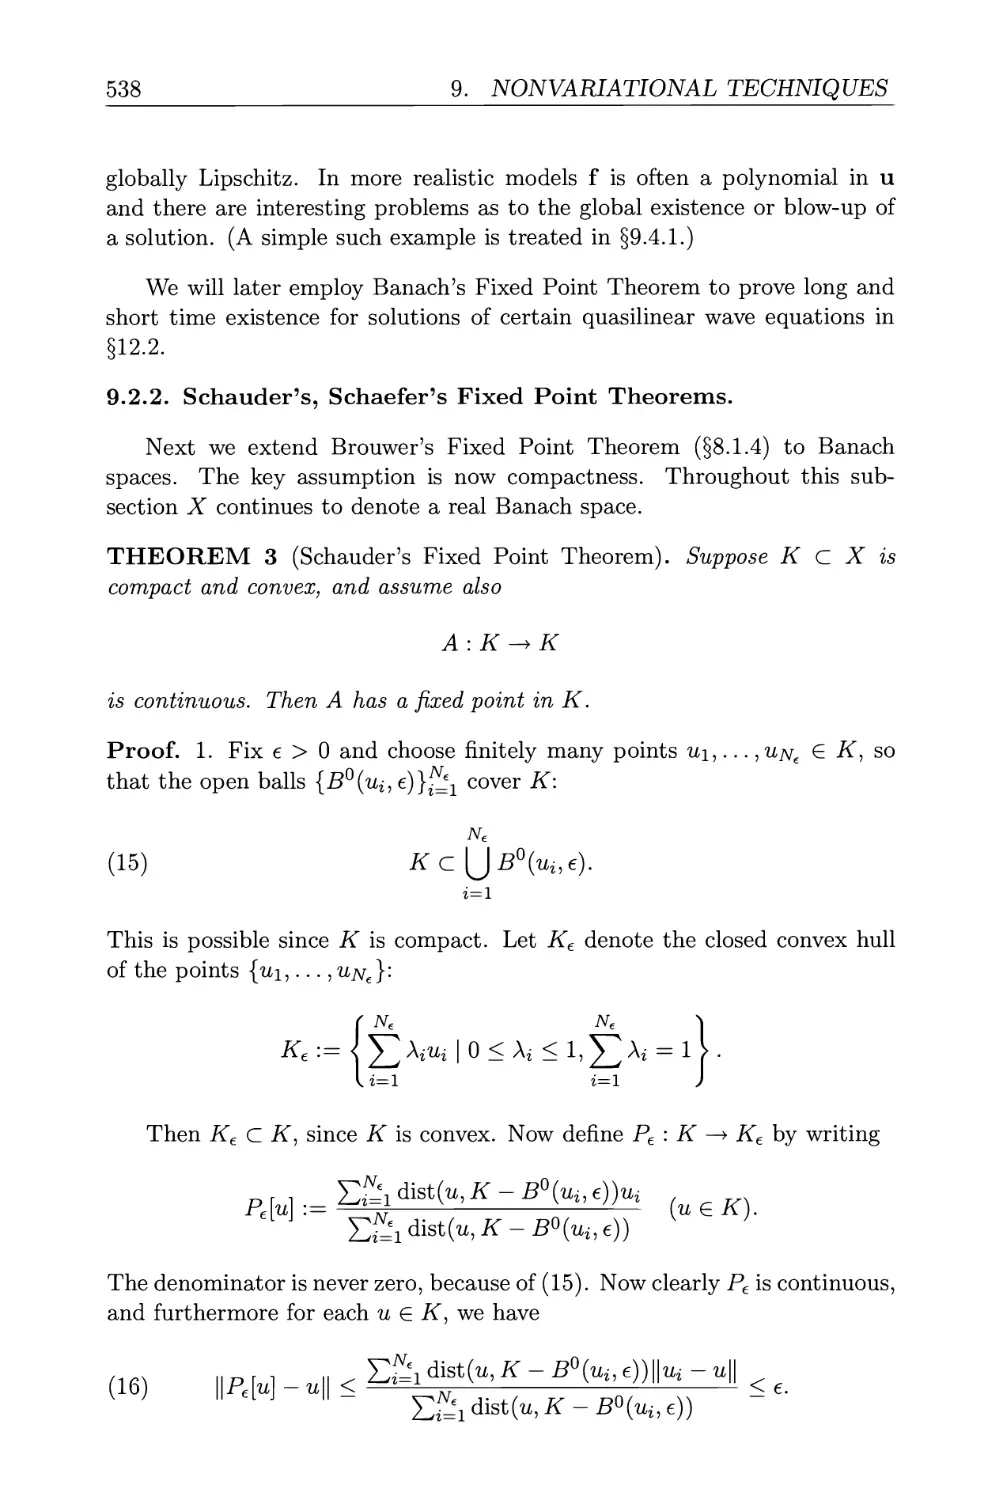 9.2.2. Schauder's, Schaefer's Fixed Point Theorems